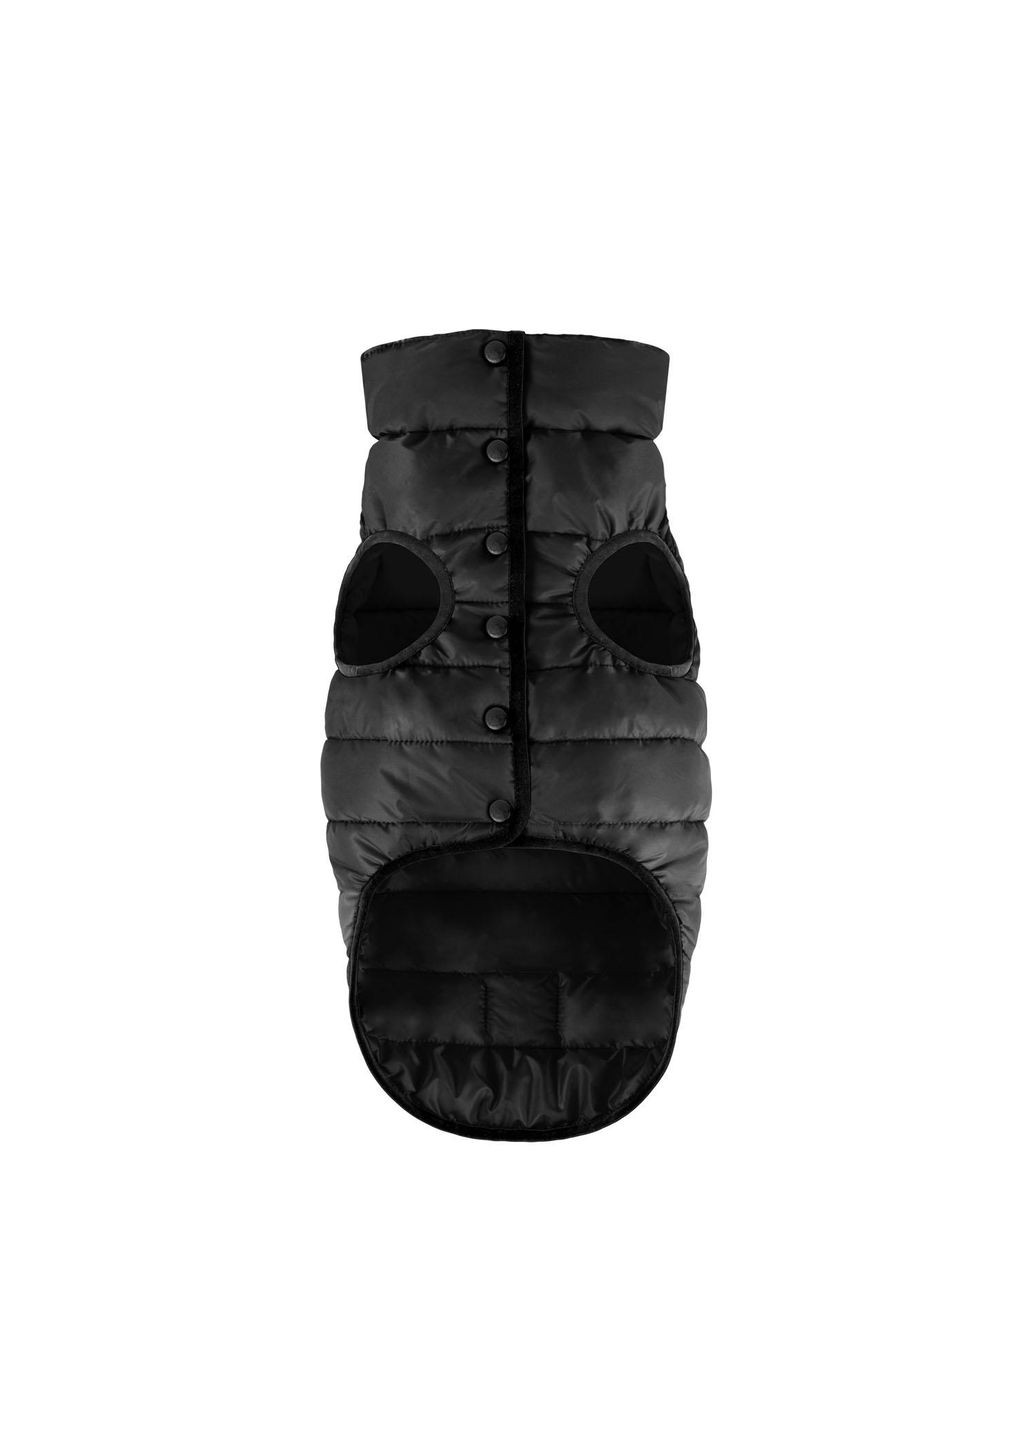 Одностороння курточка AiryVest ONE для собак чорна, розмір XS30 (20631) Airy Vest (279572266)